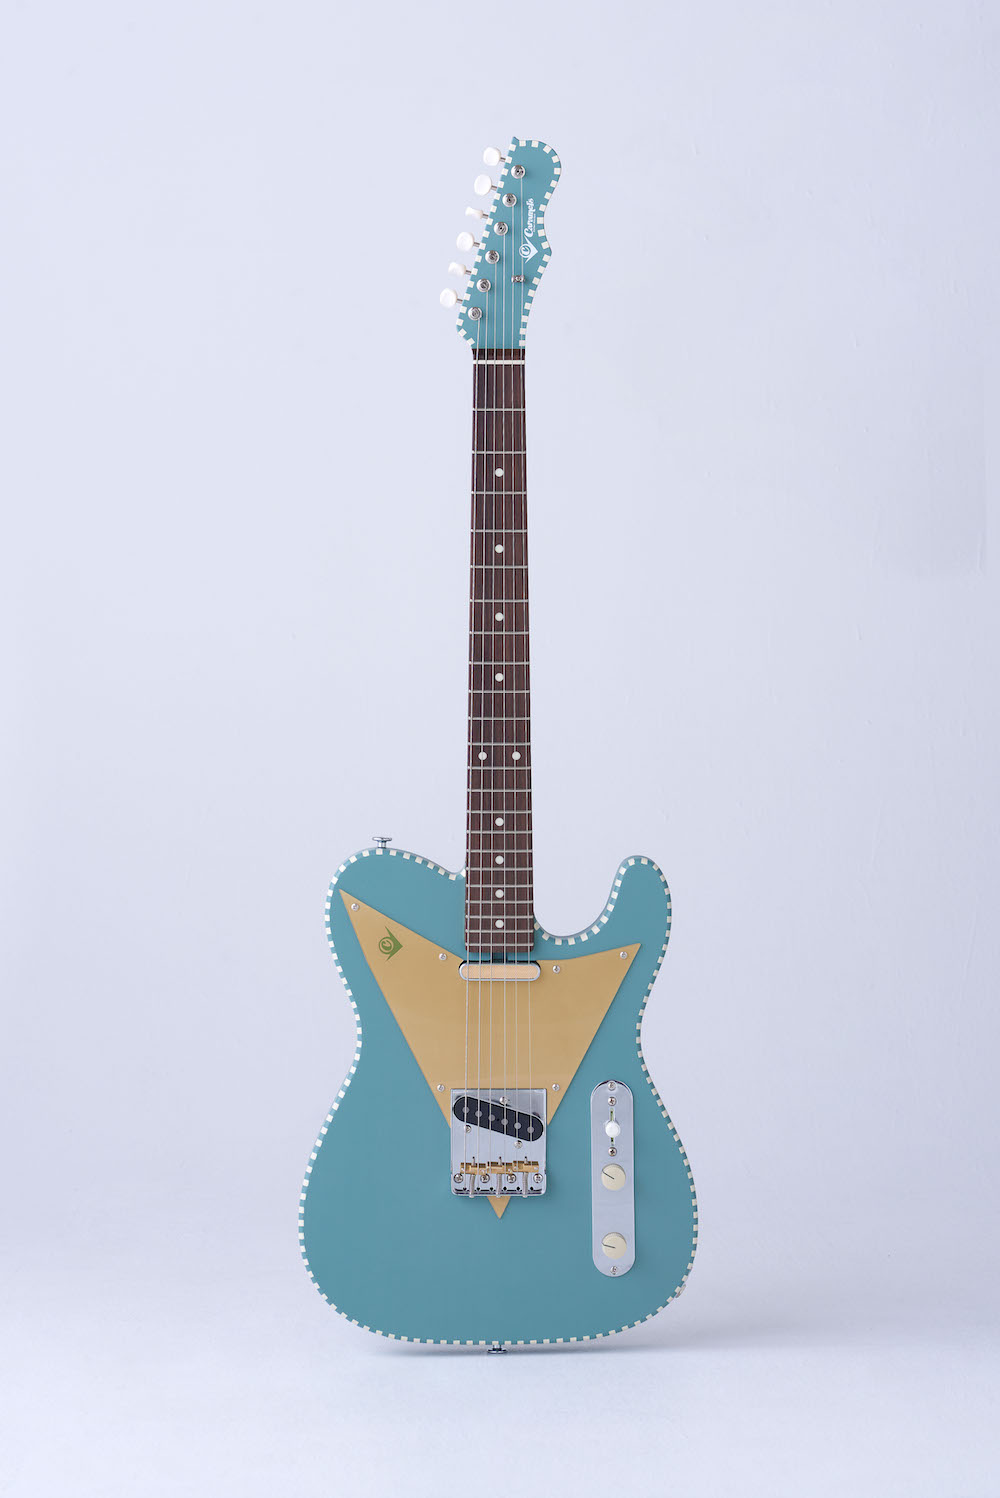 塗装ウレタンのつぶし加工ハンドメイド⭐  ラスタカラーな自作エレキギター